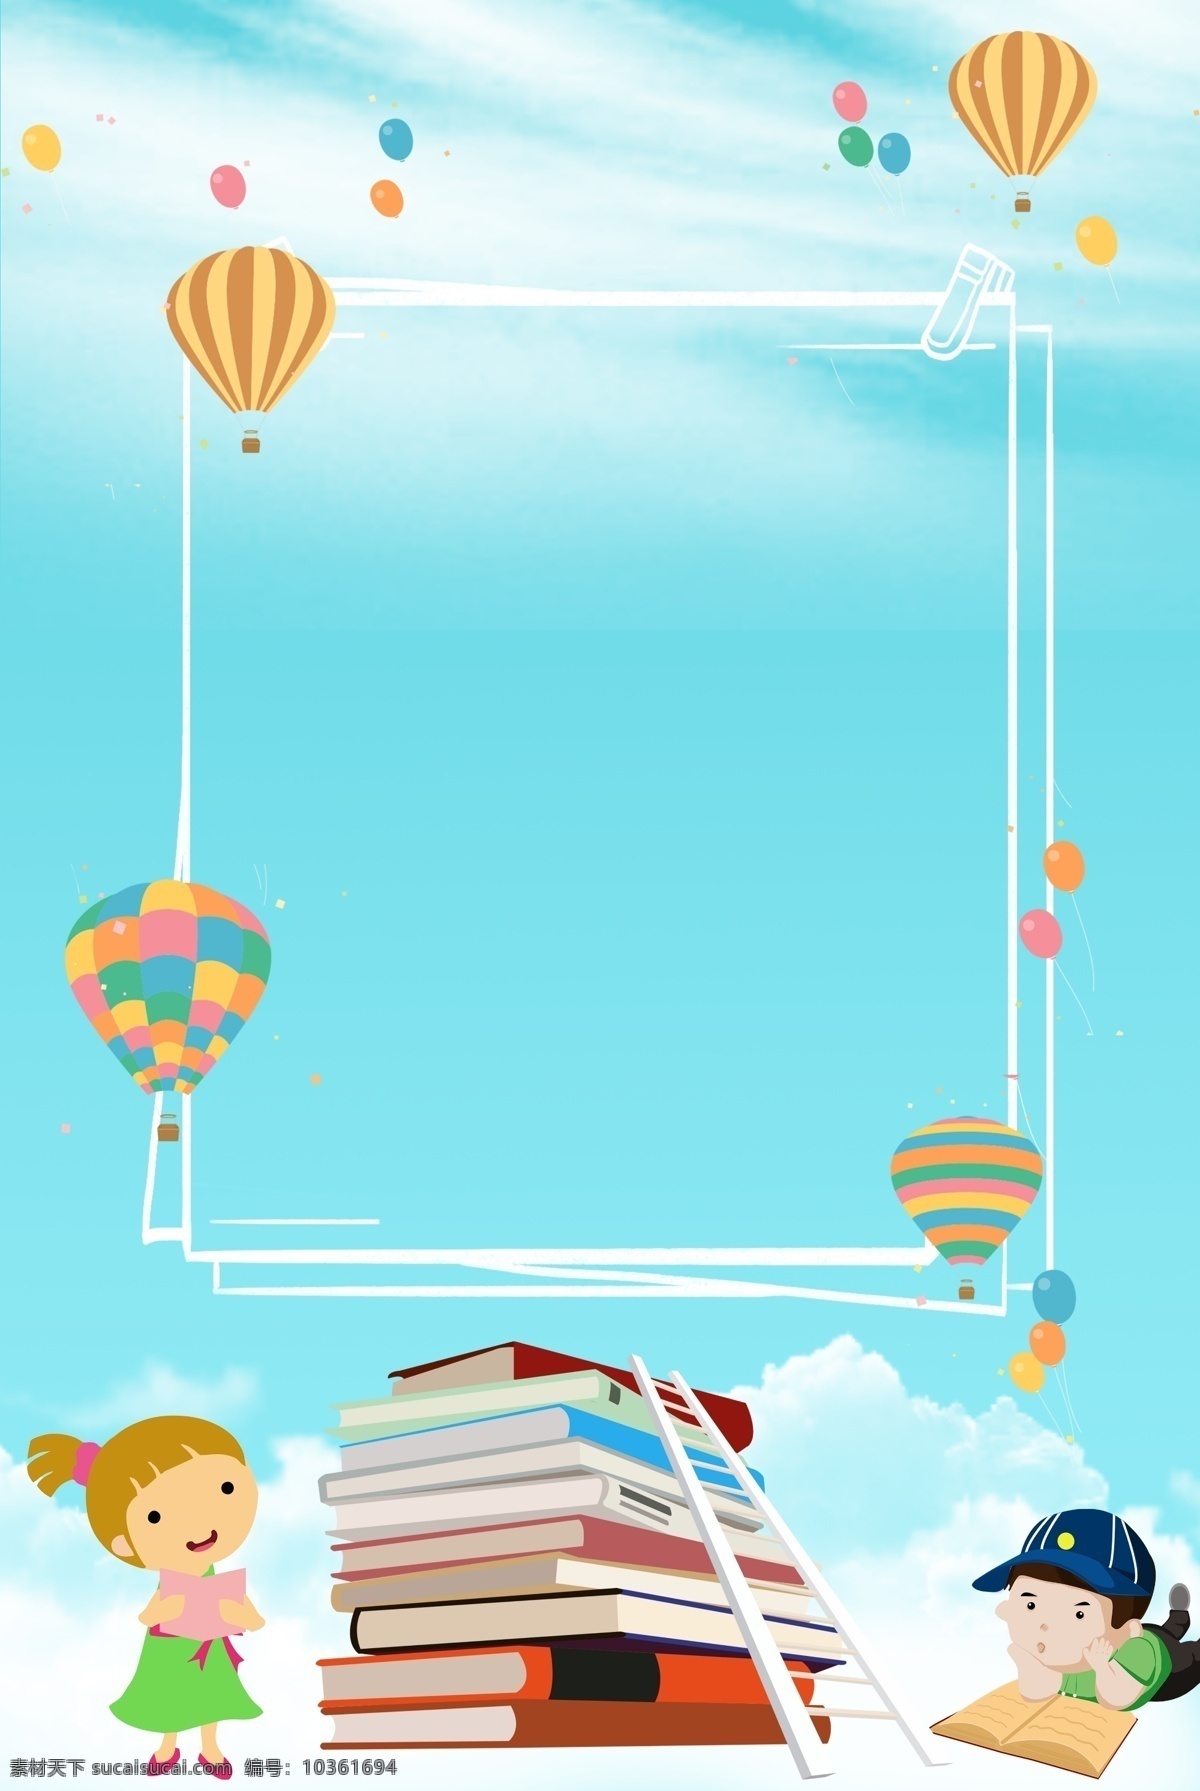 国际 儿童 图书 日 读书 书籍 叠书 孩子 看书 看本 梯子 热气球